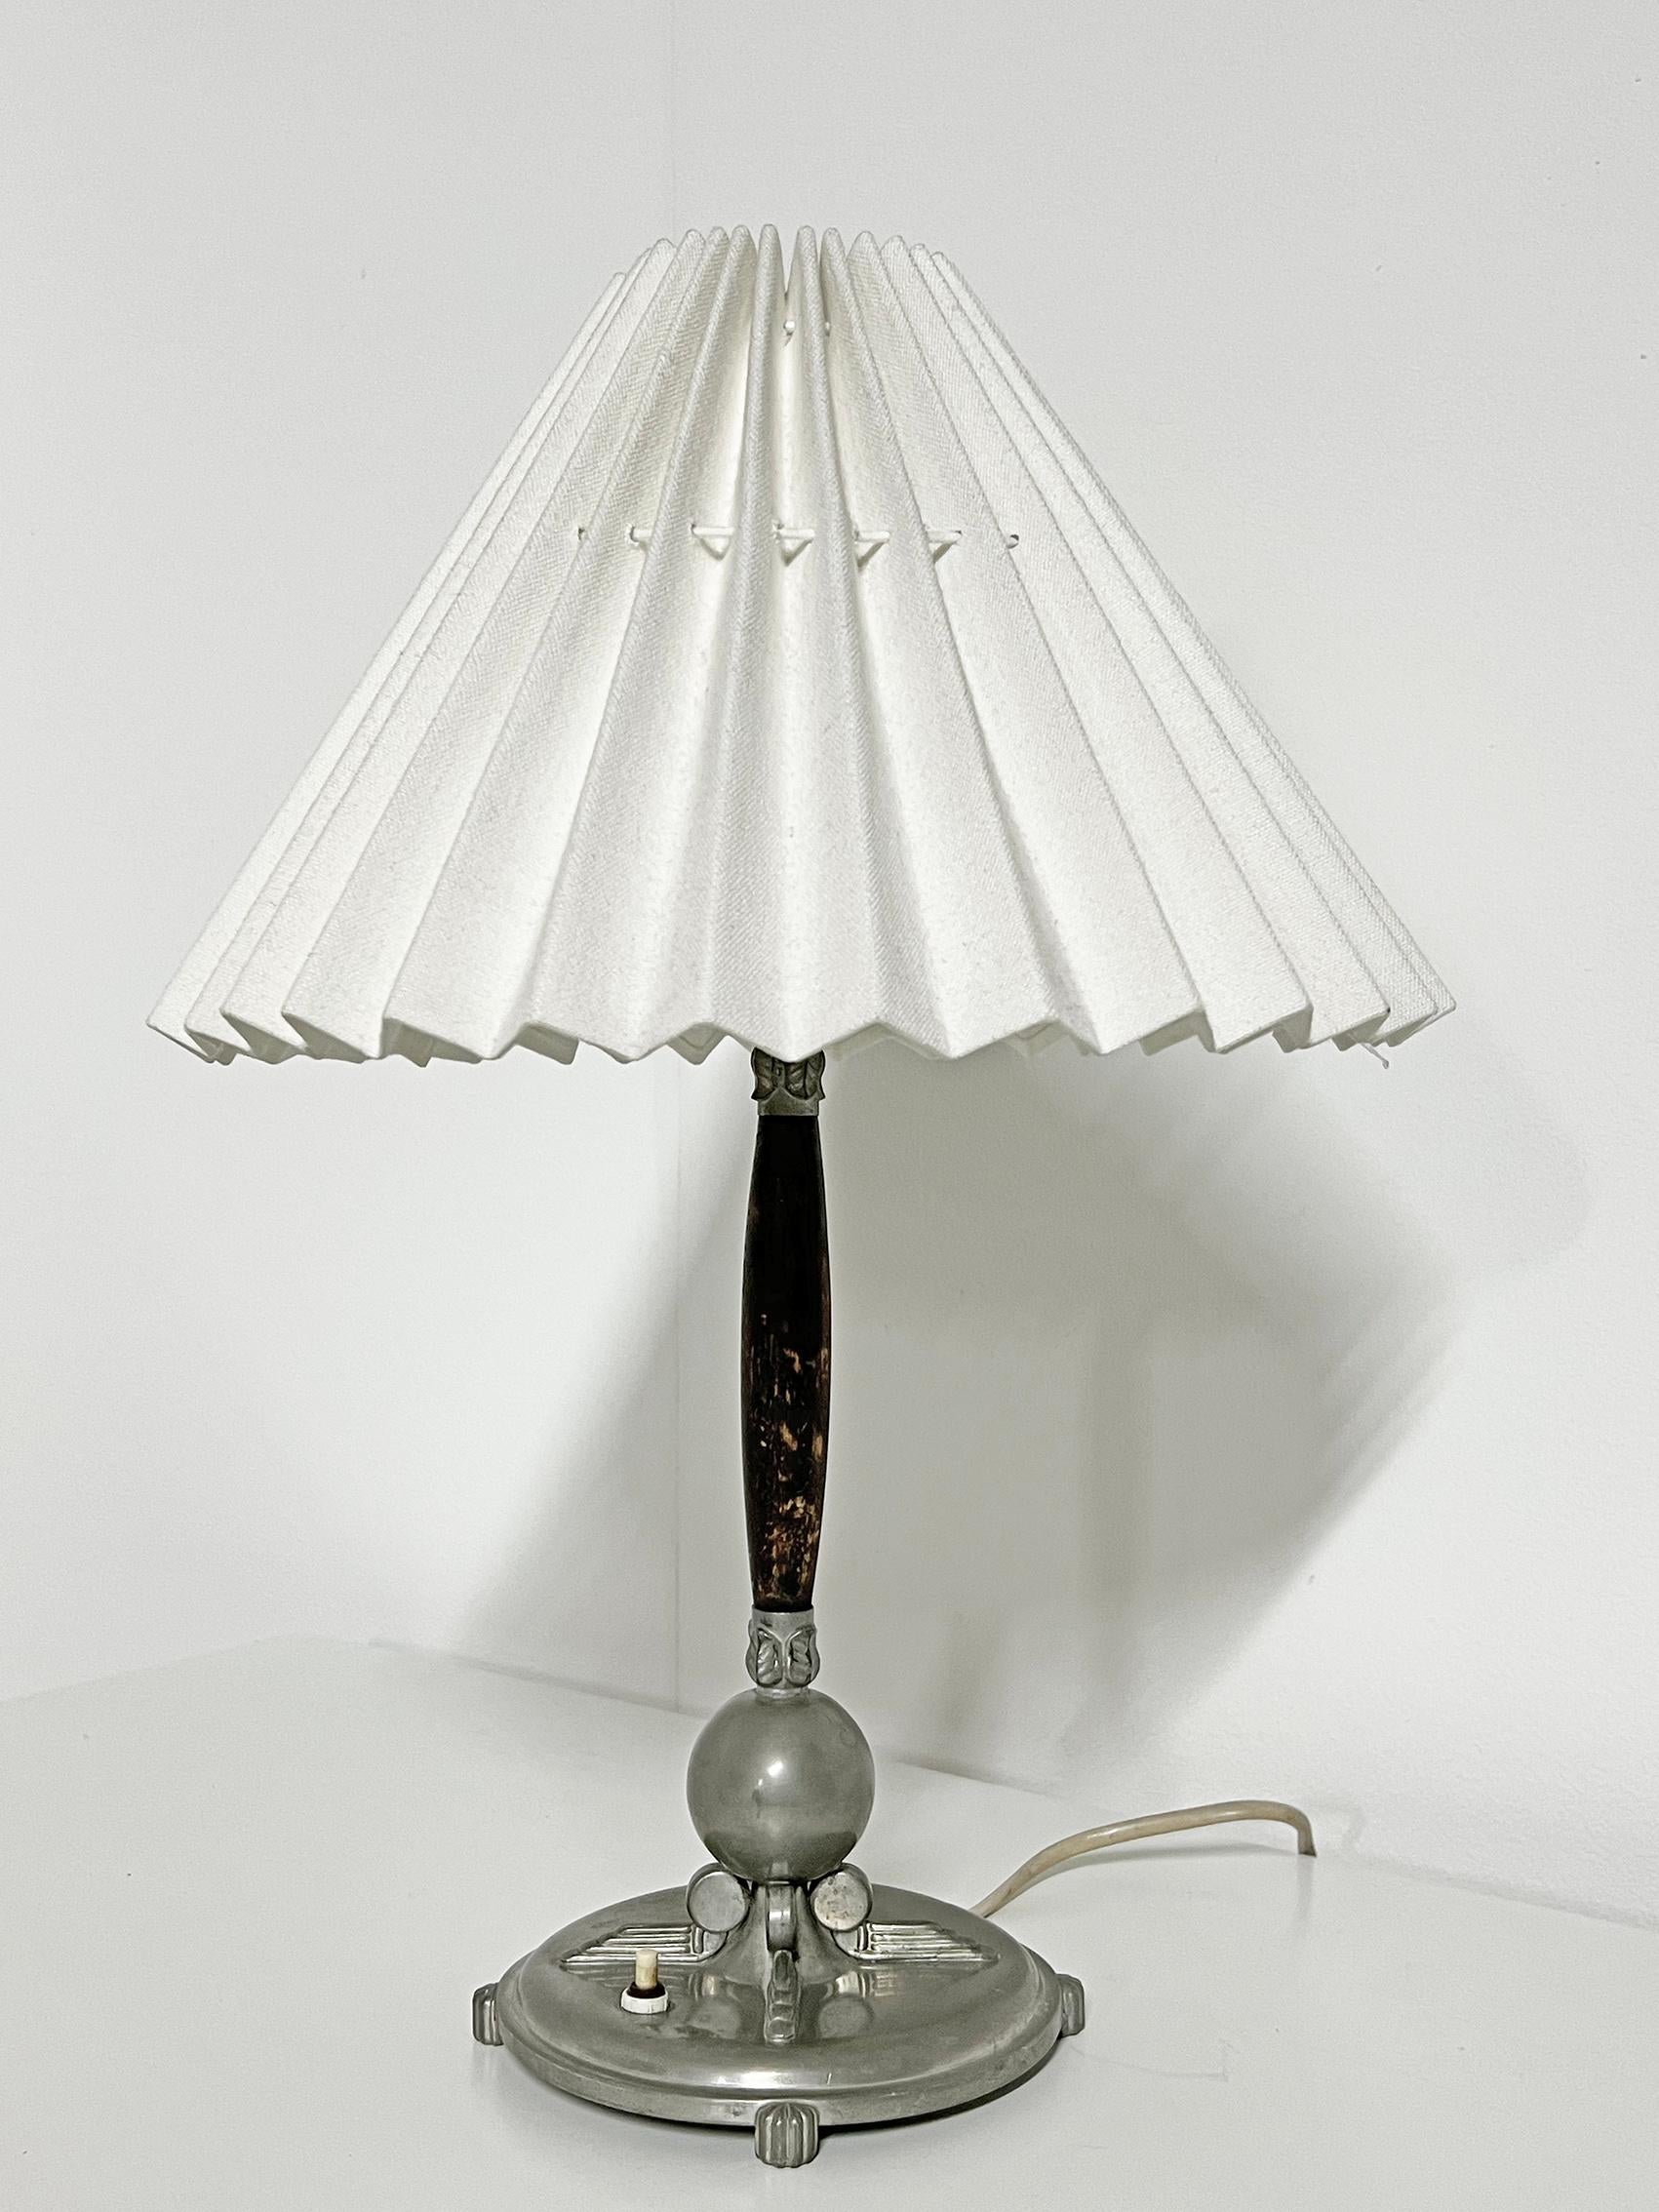 Superbe lampe de table avec de beaux détails art déco, en étain et bois teinté, Lundin & Lindberg -1938.
Signé avec la marque du fabricant. 
Bon état vintage, usure et patine correspondant à l'âge et à l'utilisation.
Patine d'étain, usure sur la